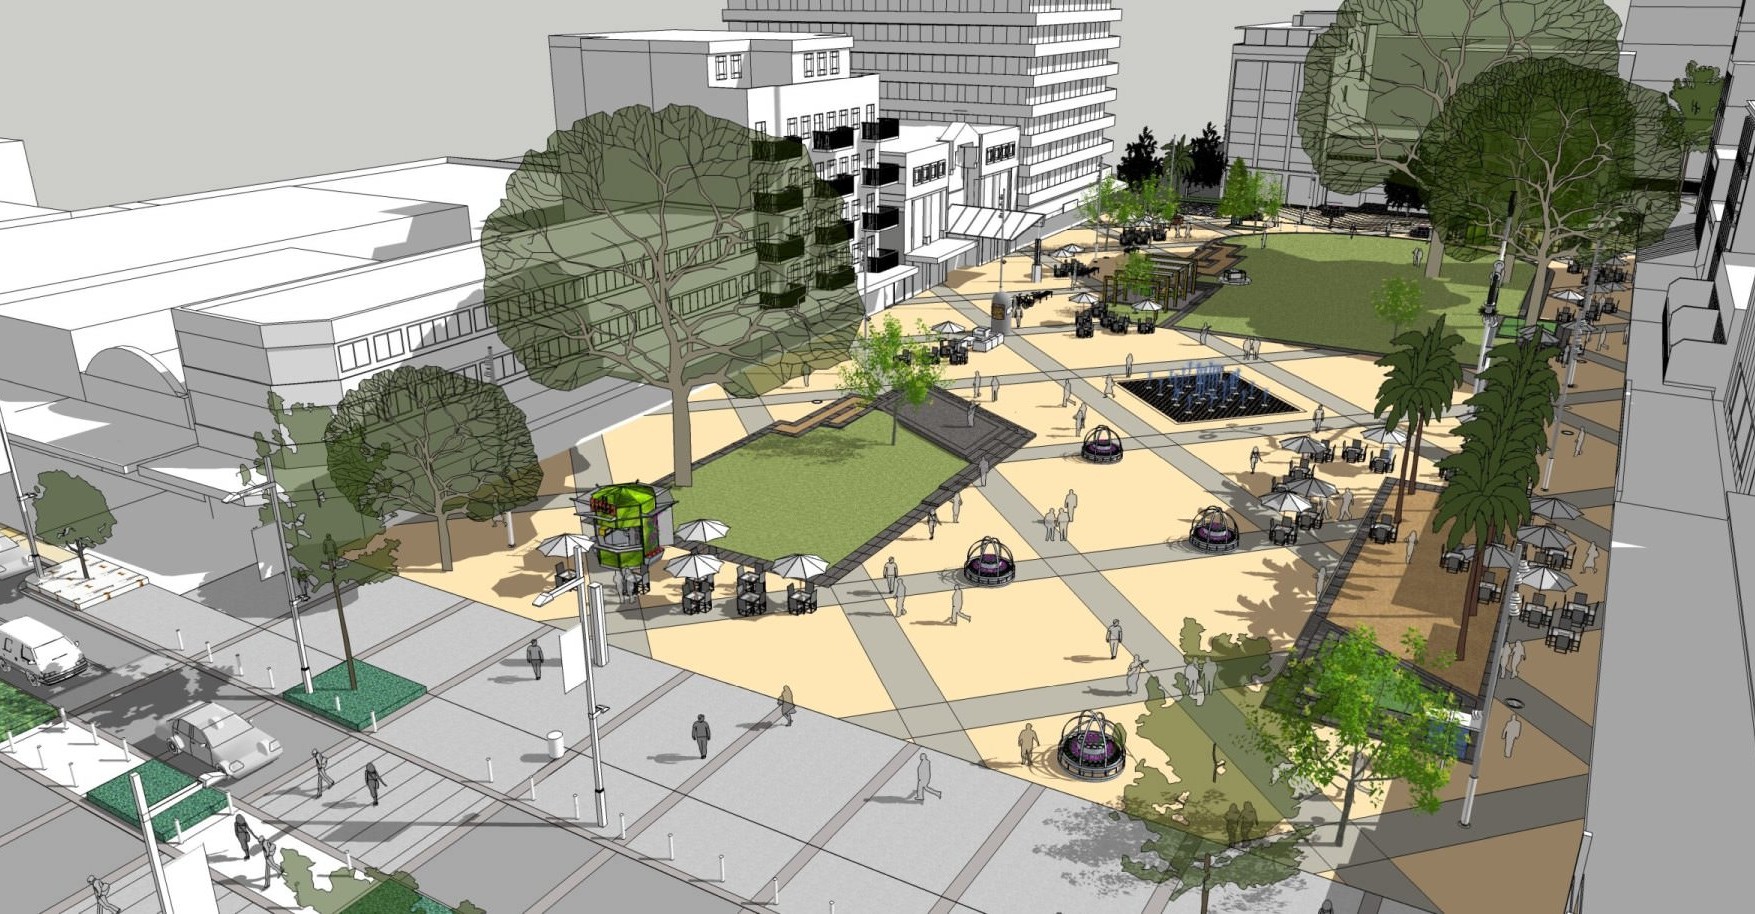 Hamilton City Heart Garden Place Final Concept scaled